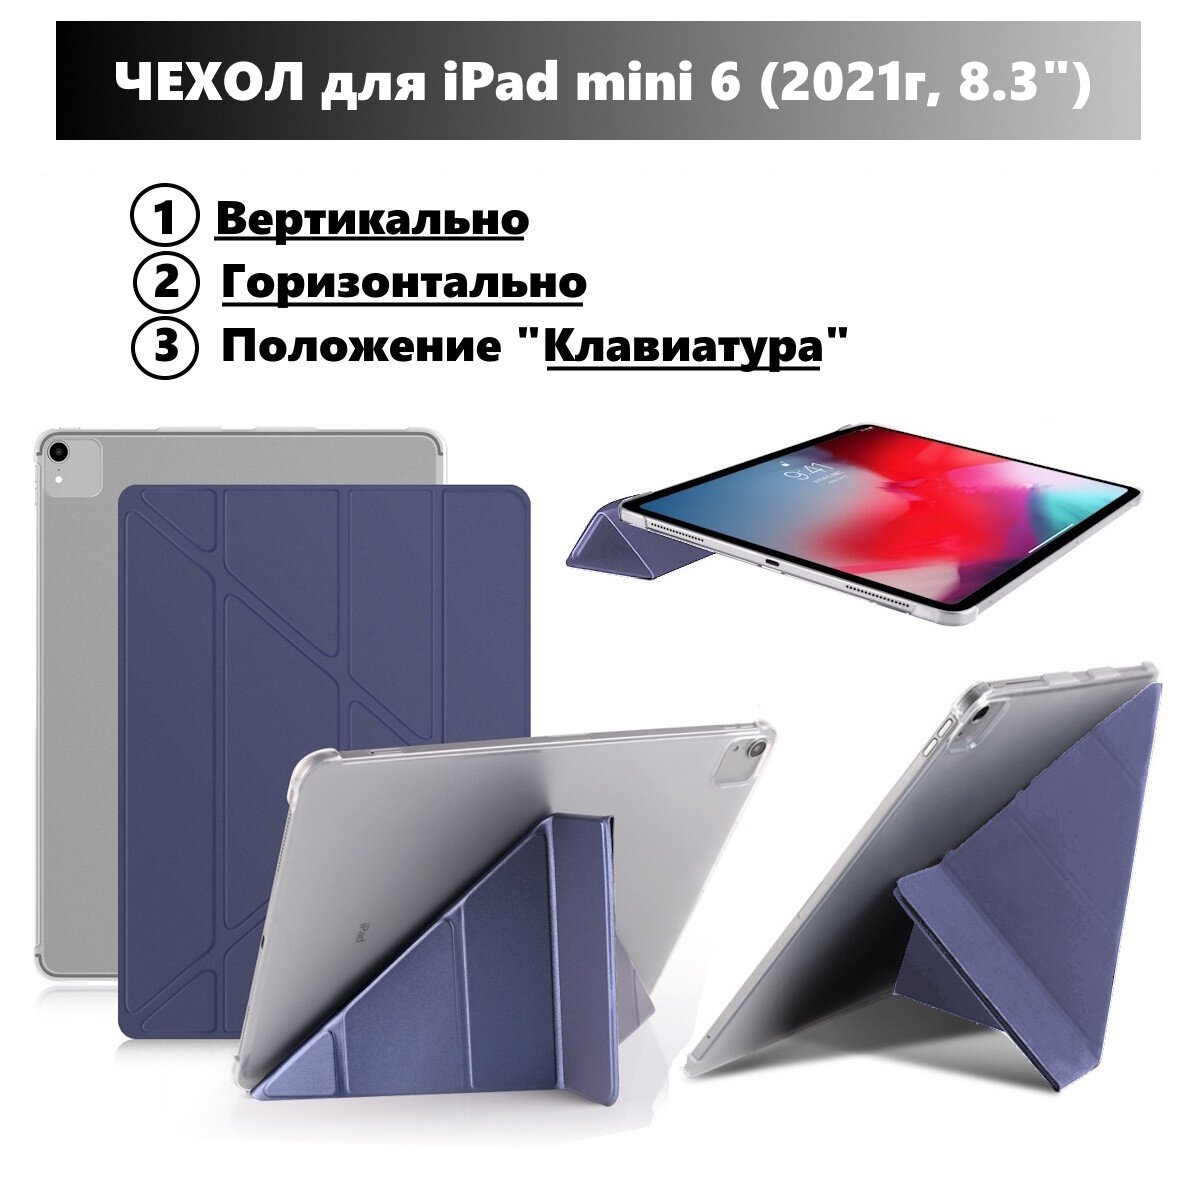 Чехол для iPad mini 6 (8.3" 2021г) горизонтальный и вертикальный умный чехол с местом для стилуса Темно-синий